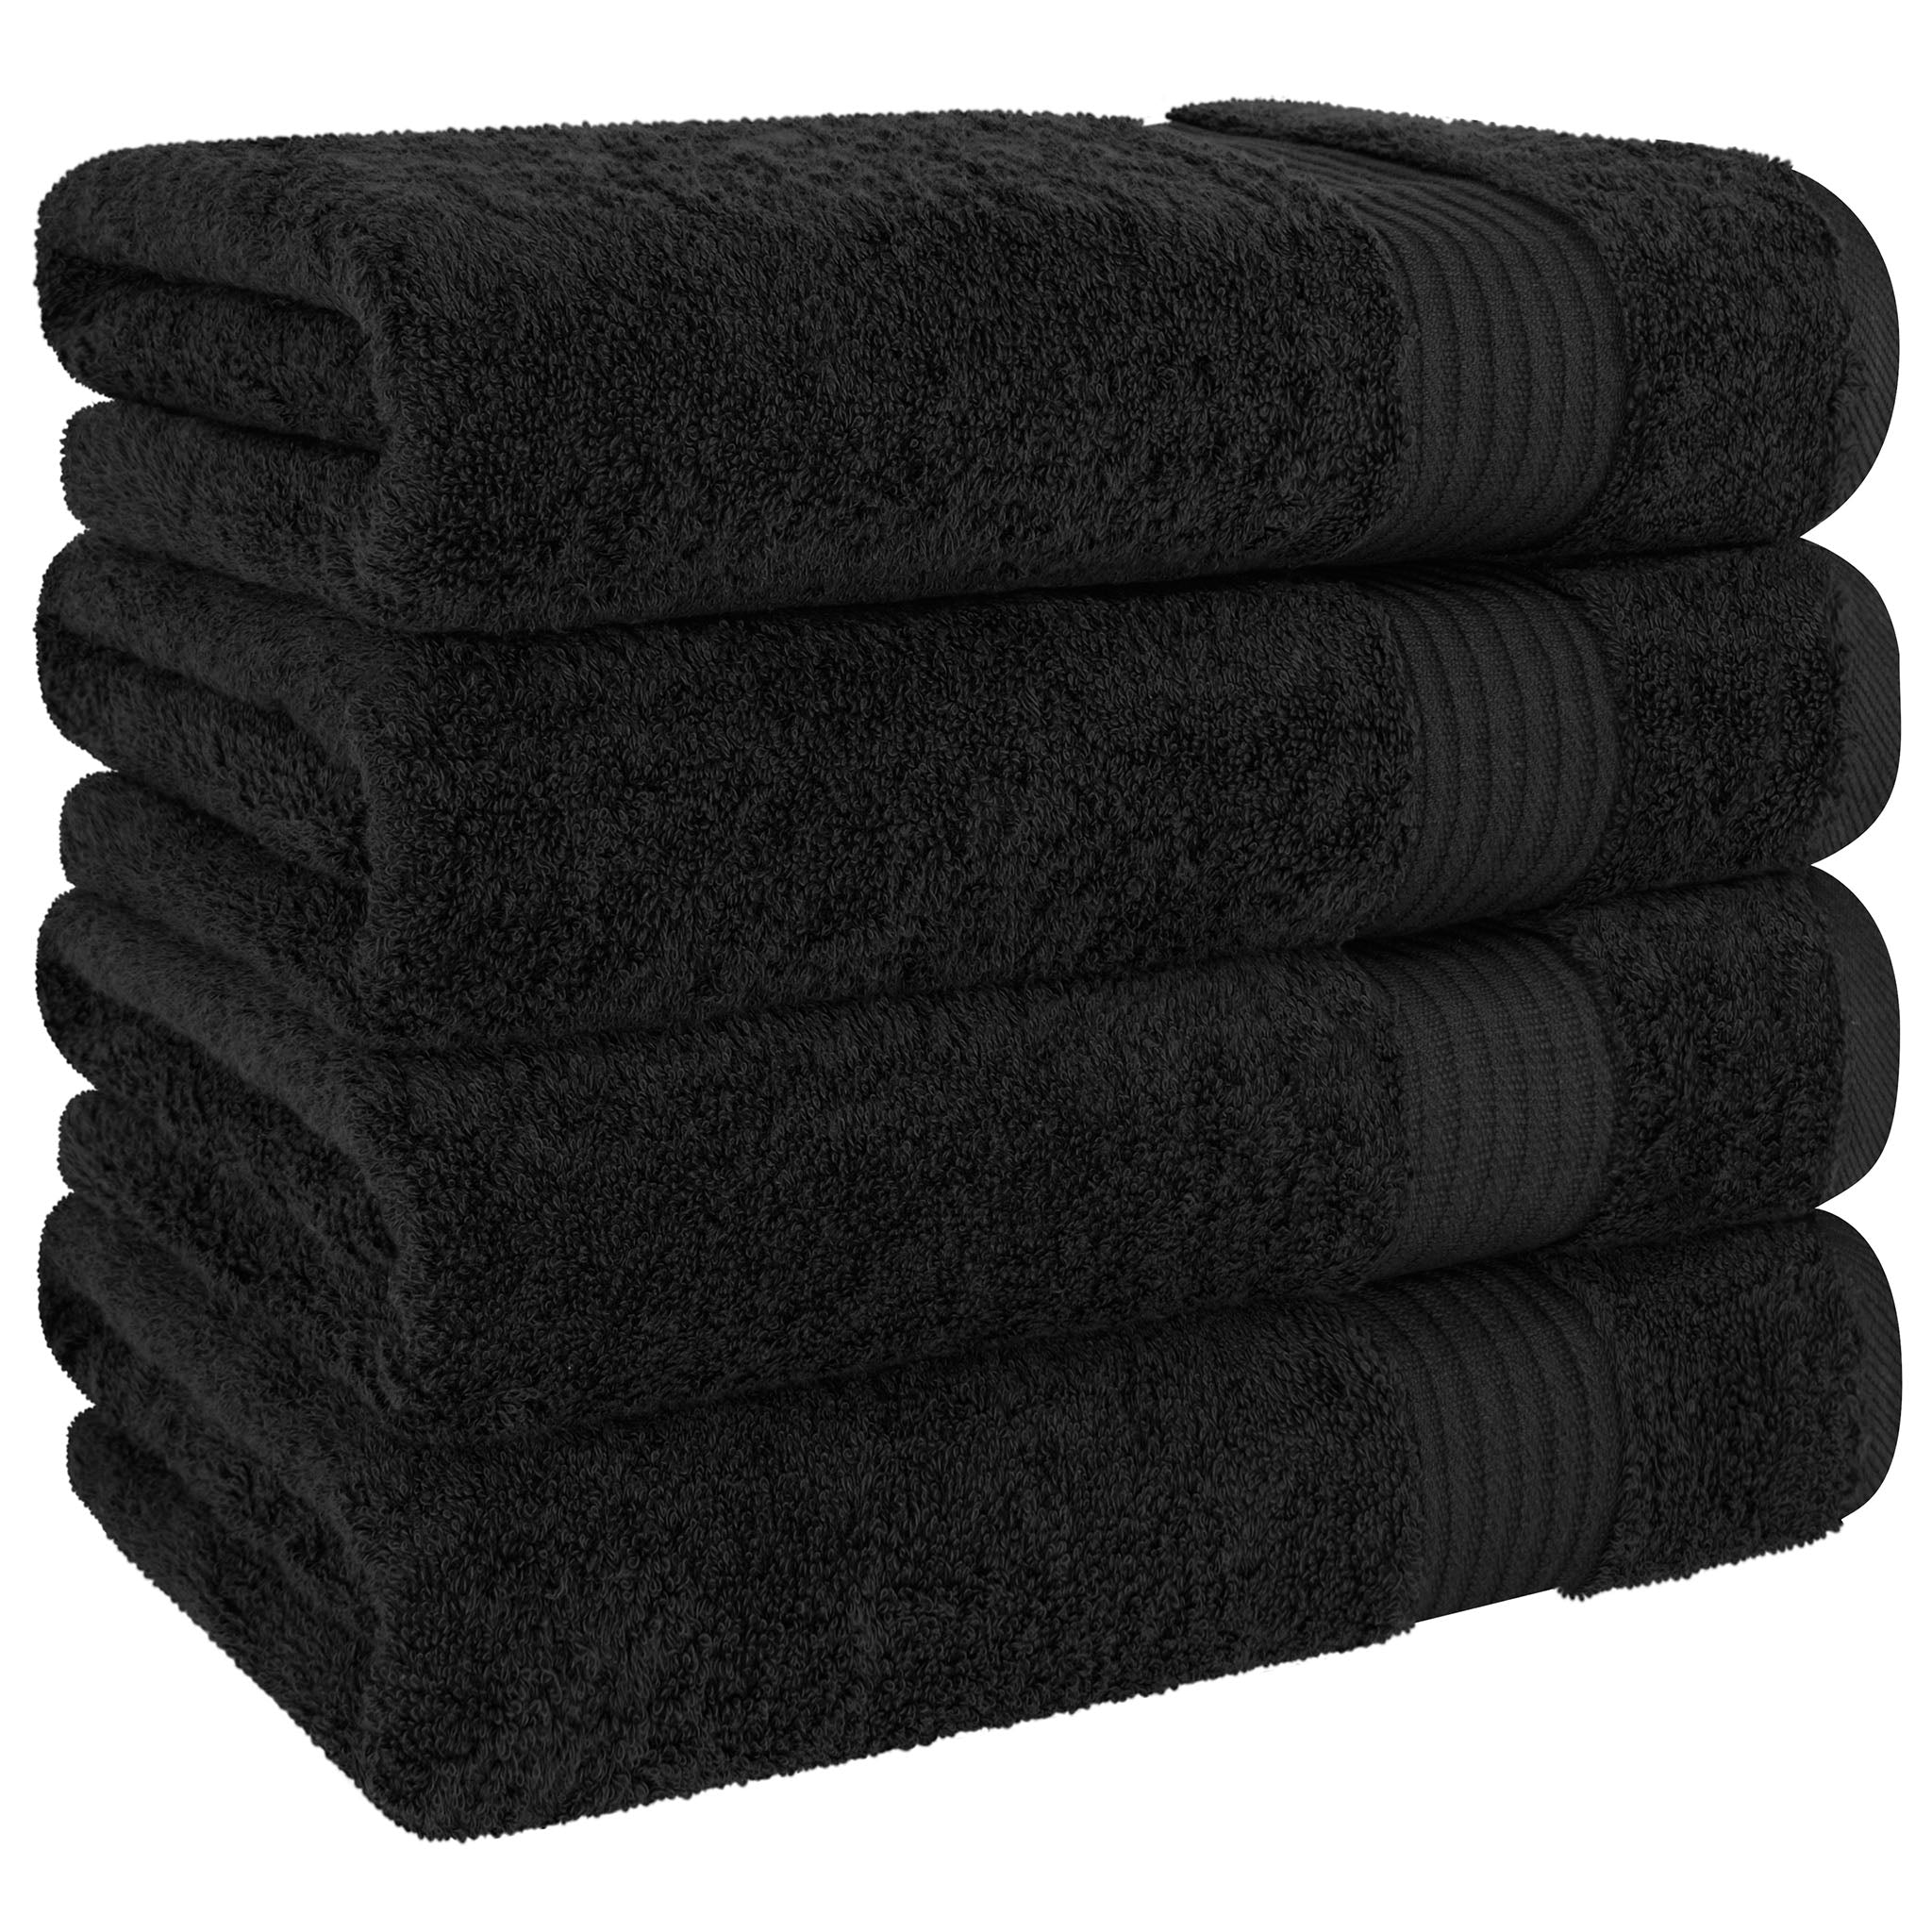 American Soft Linen Bekos 100% Cotton Turkish Towels, 4 Piece Bath Towel Set -black-05